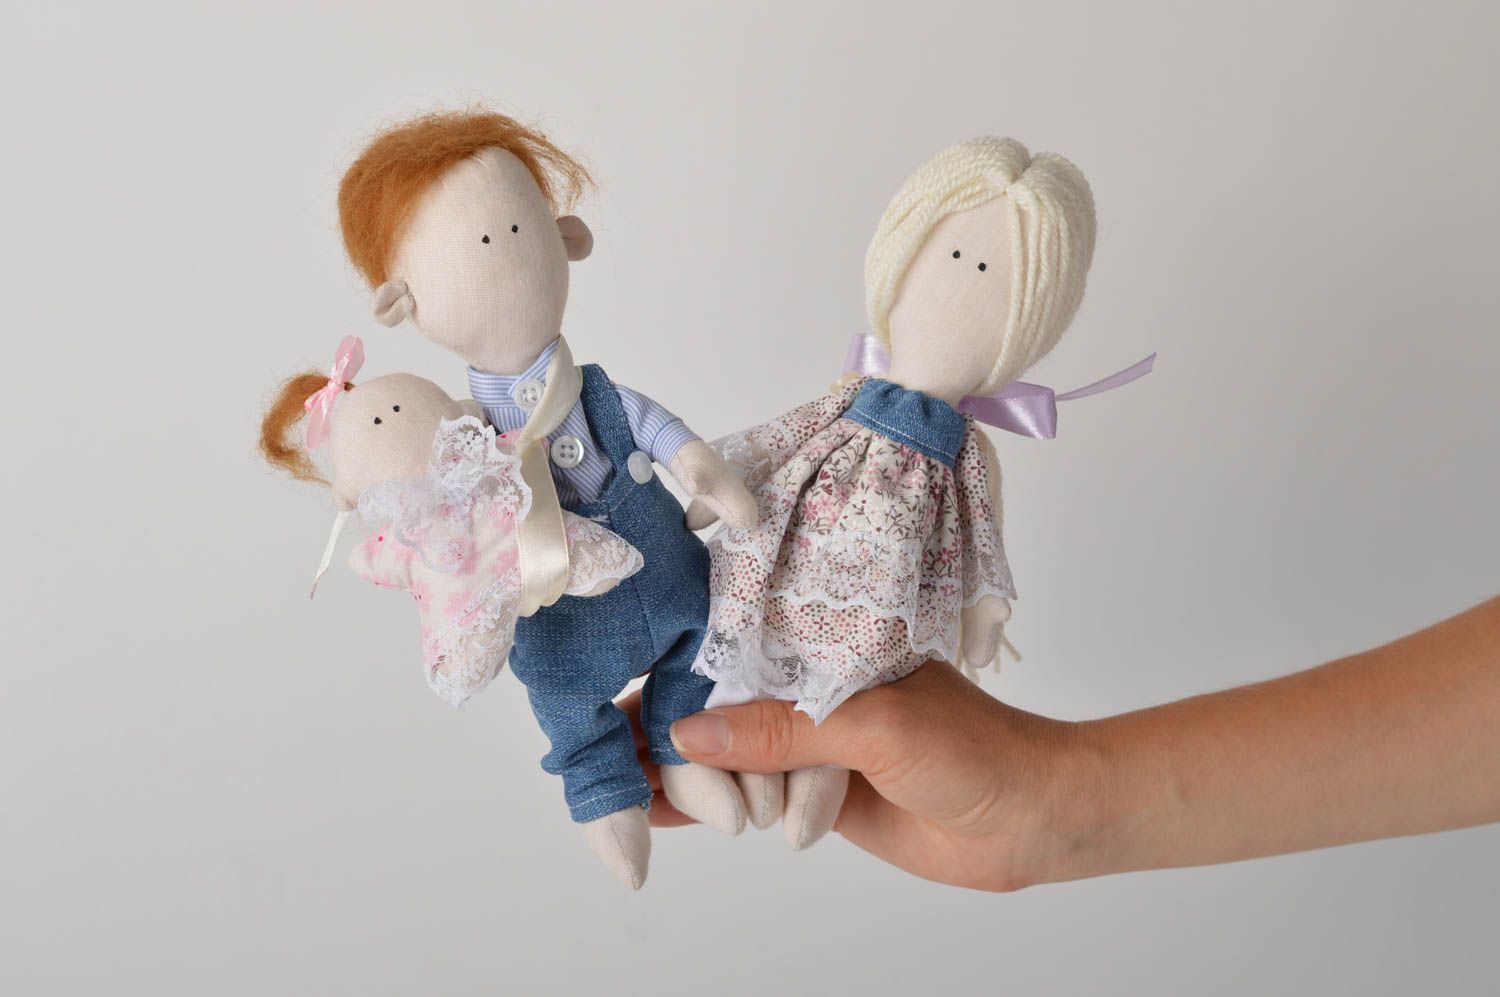 Handmade doll set of dolls designer doll unusual gift for girl nursery decor photo 5